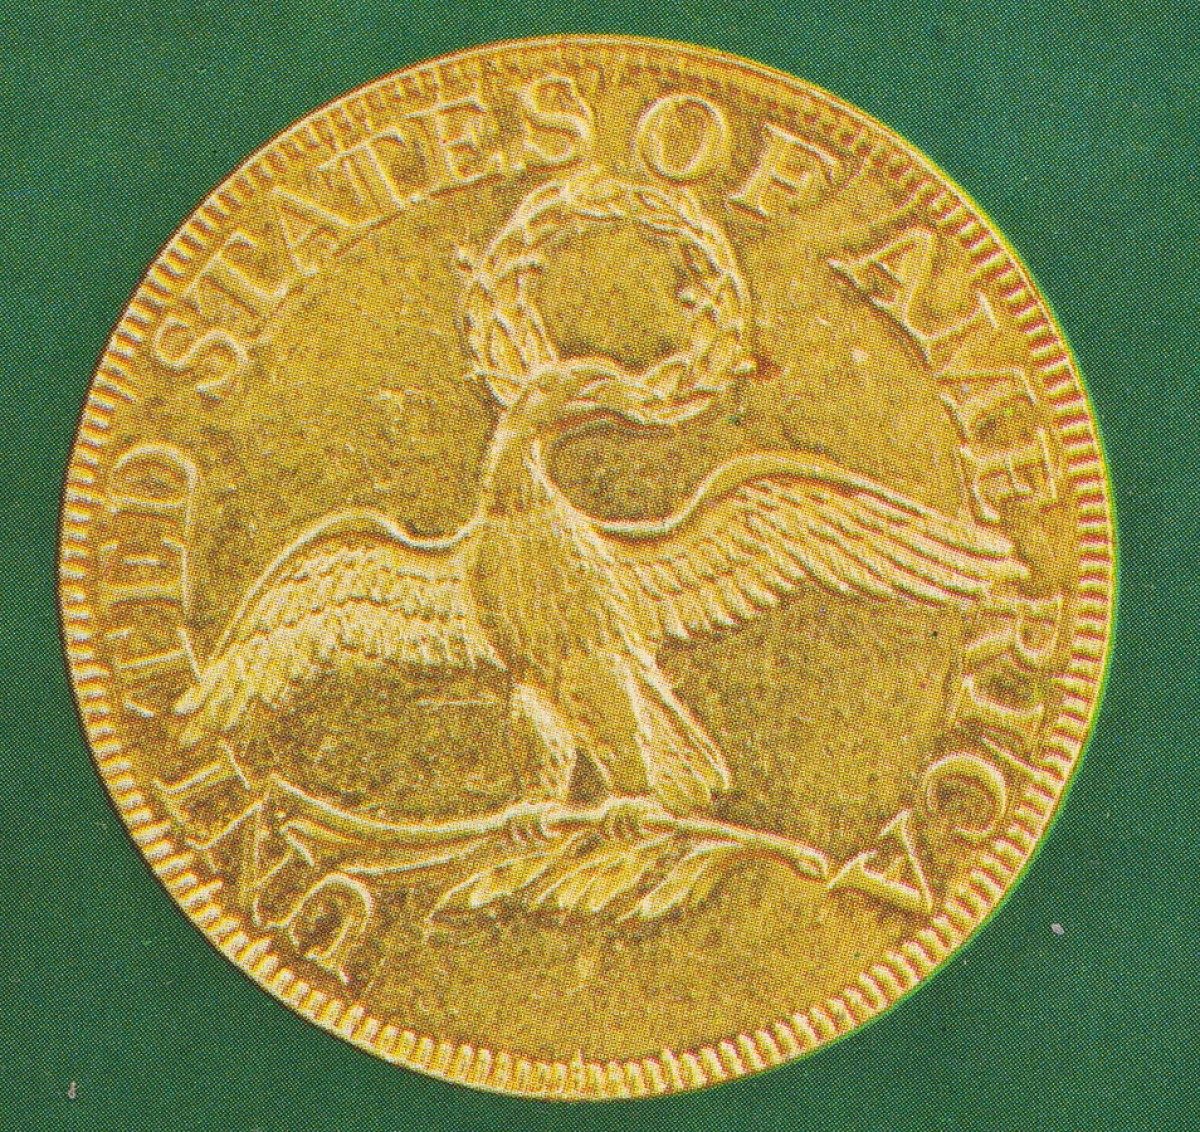 A gold eagle coin.